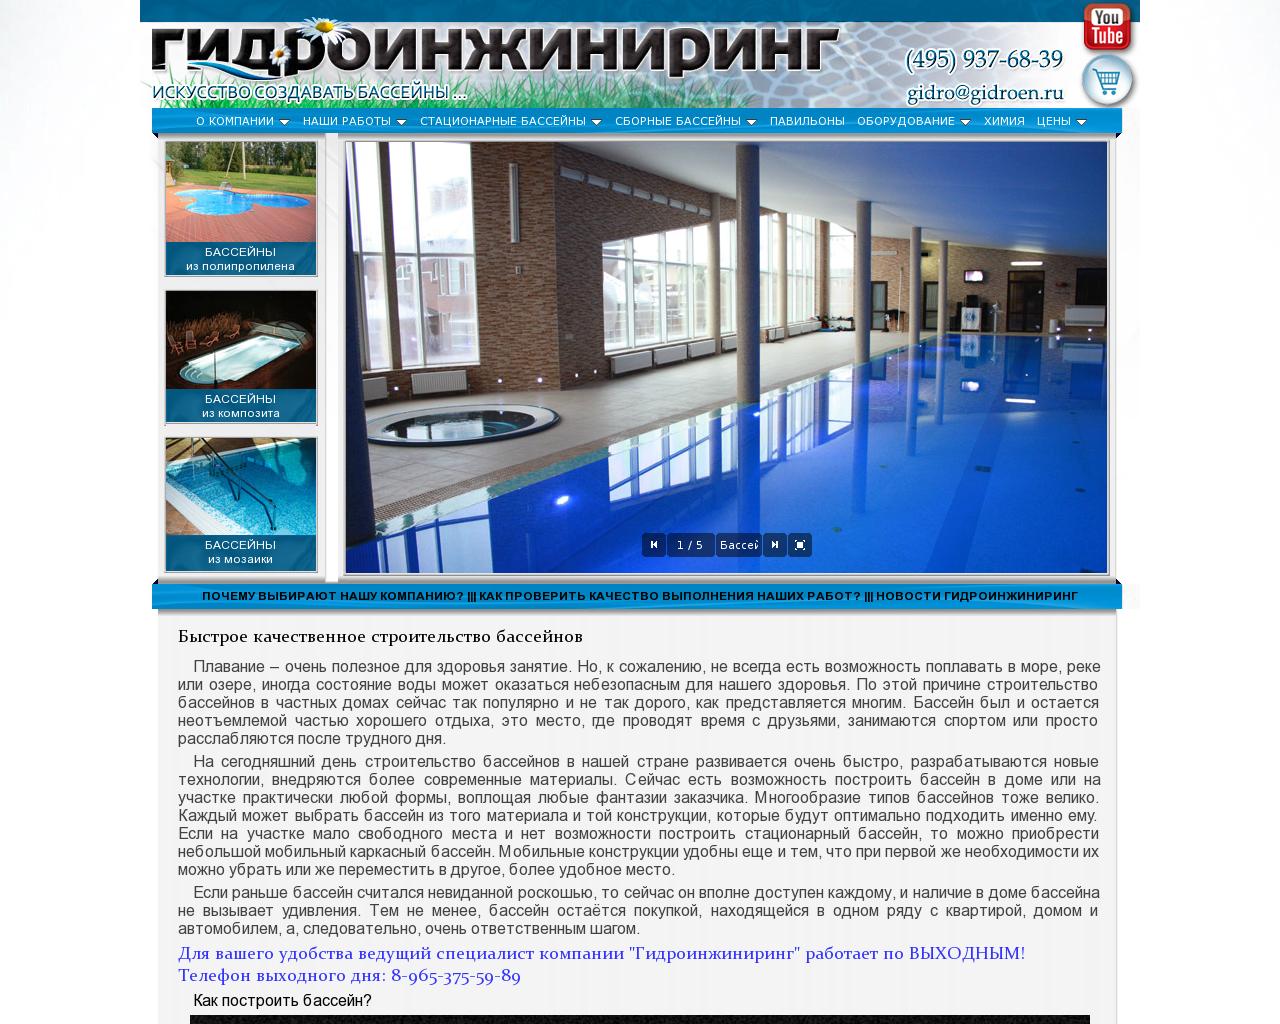 Изображение сайта gidroen.ru в разрешении 1280x1024